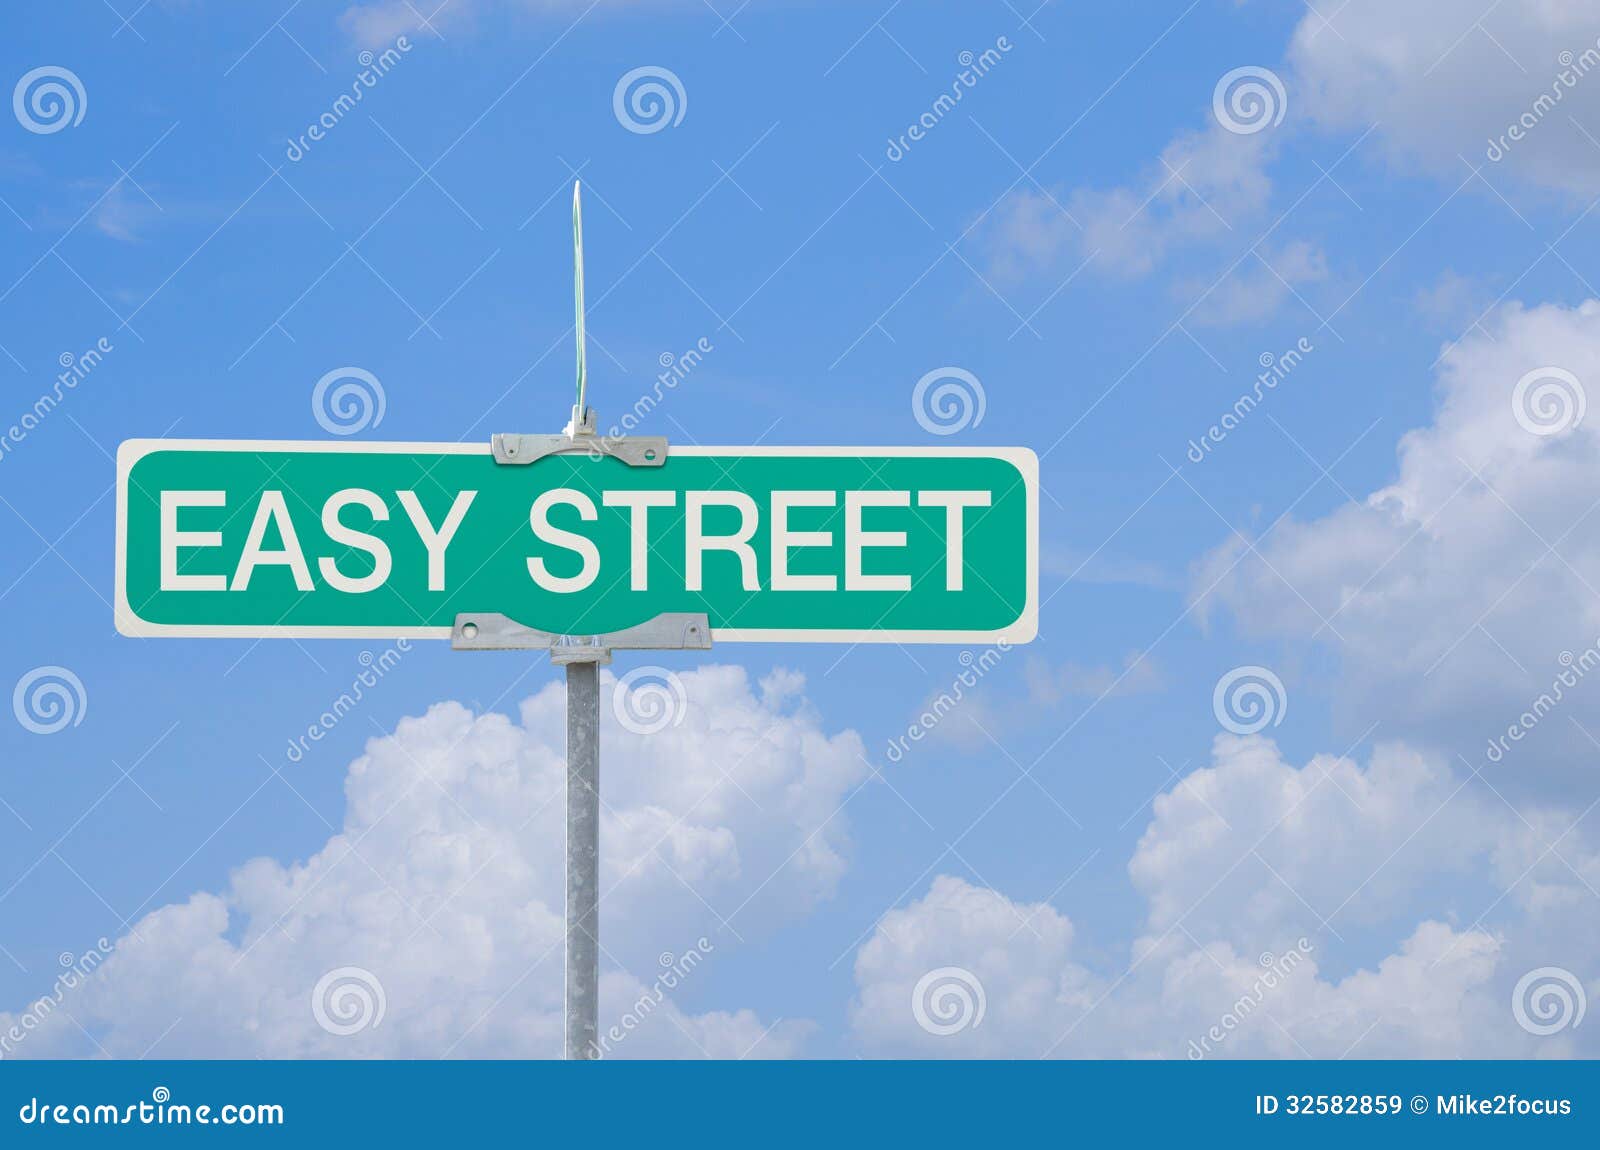 Easy-street ru